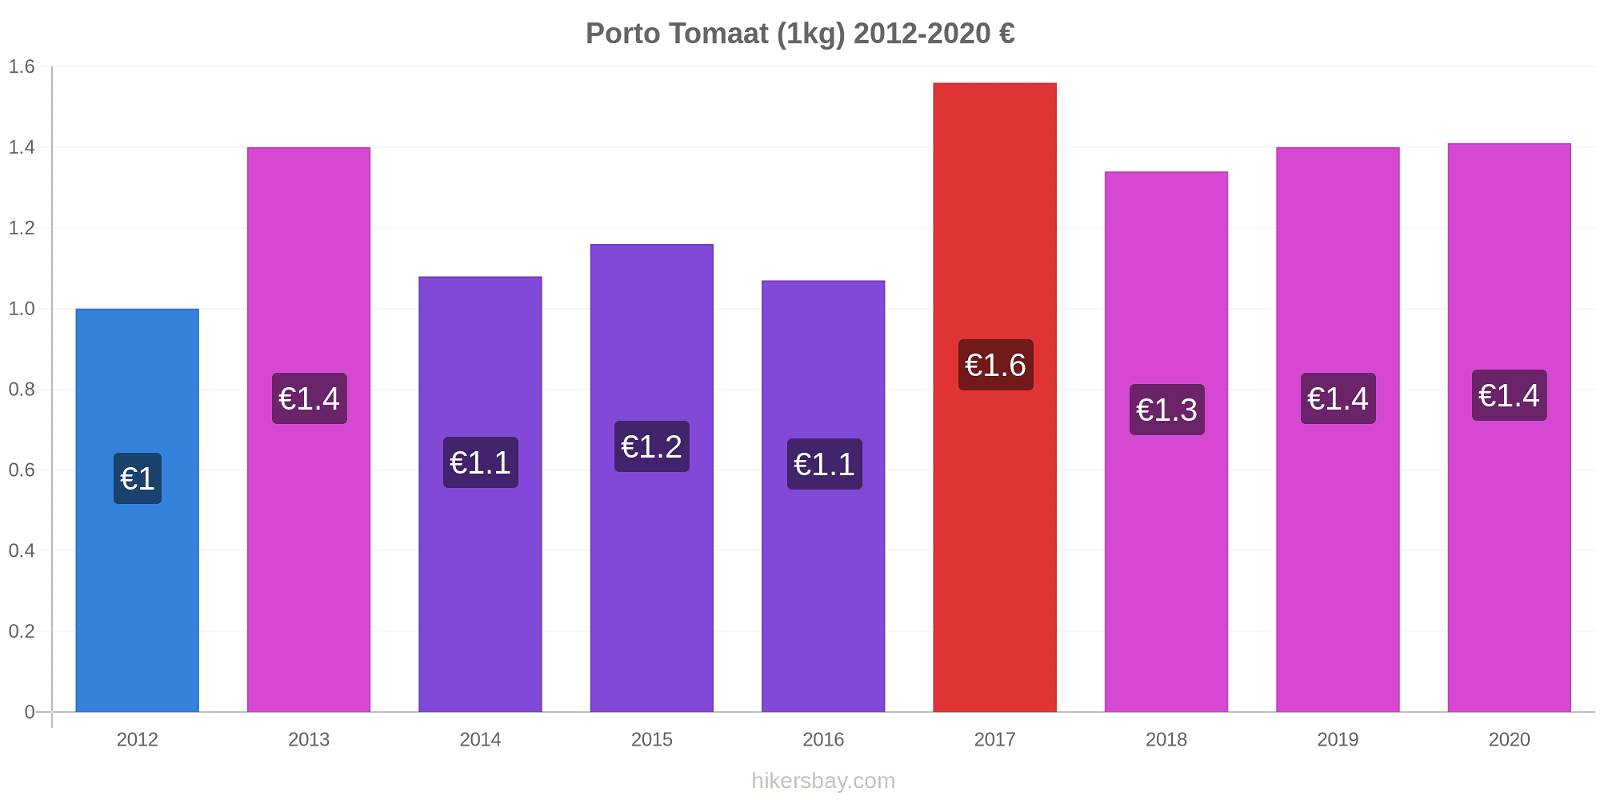 Porto prijswijzigingen Tomaat (1kg) hikersbay.com